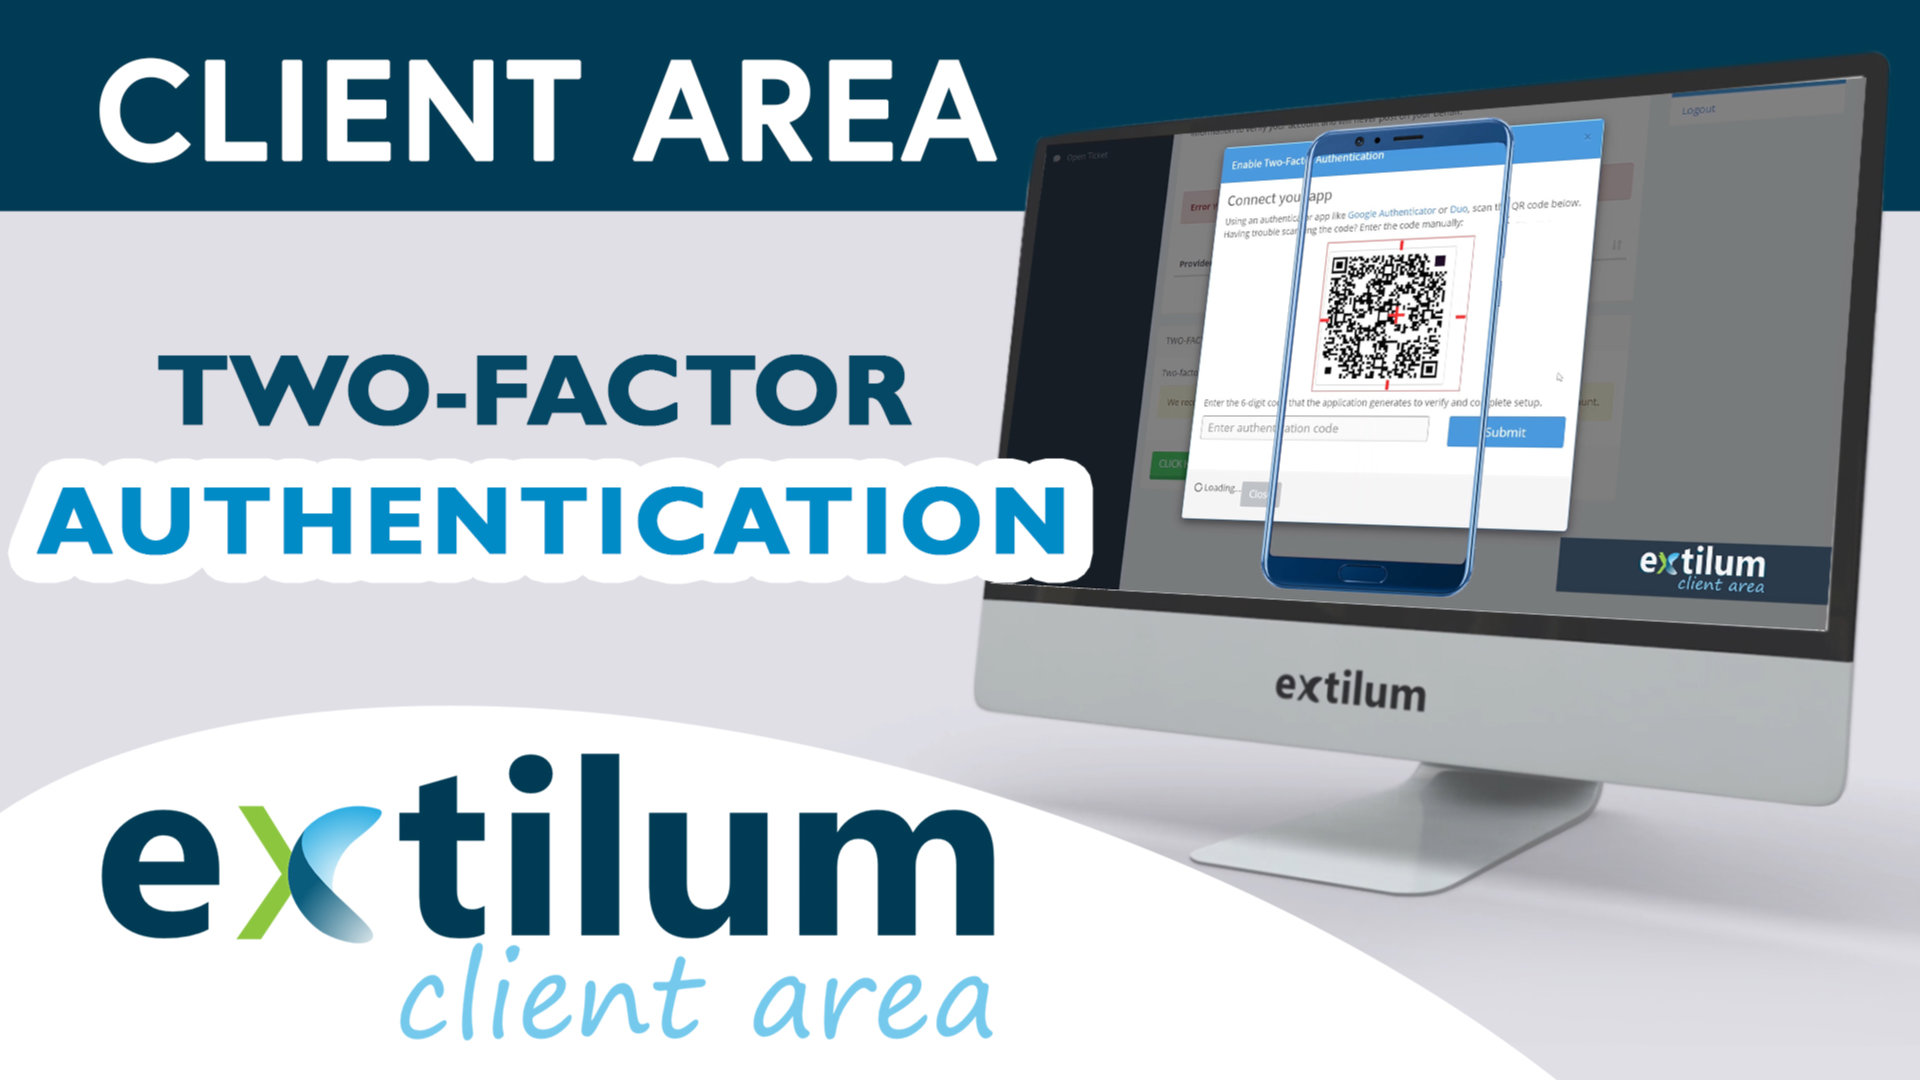 Extilum Client Area - 2FA